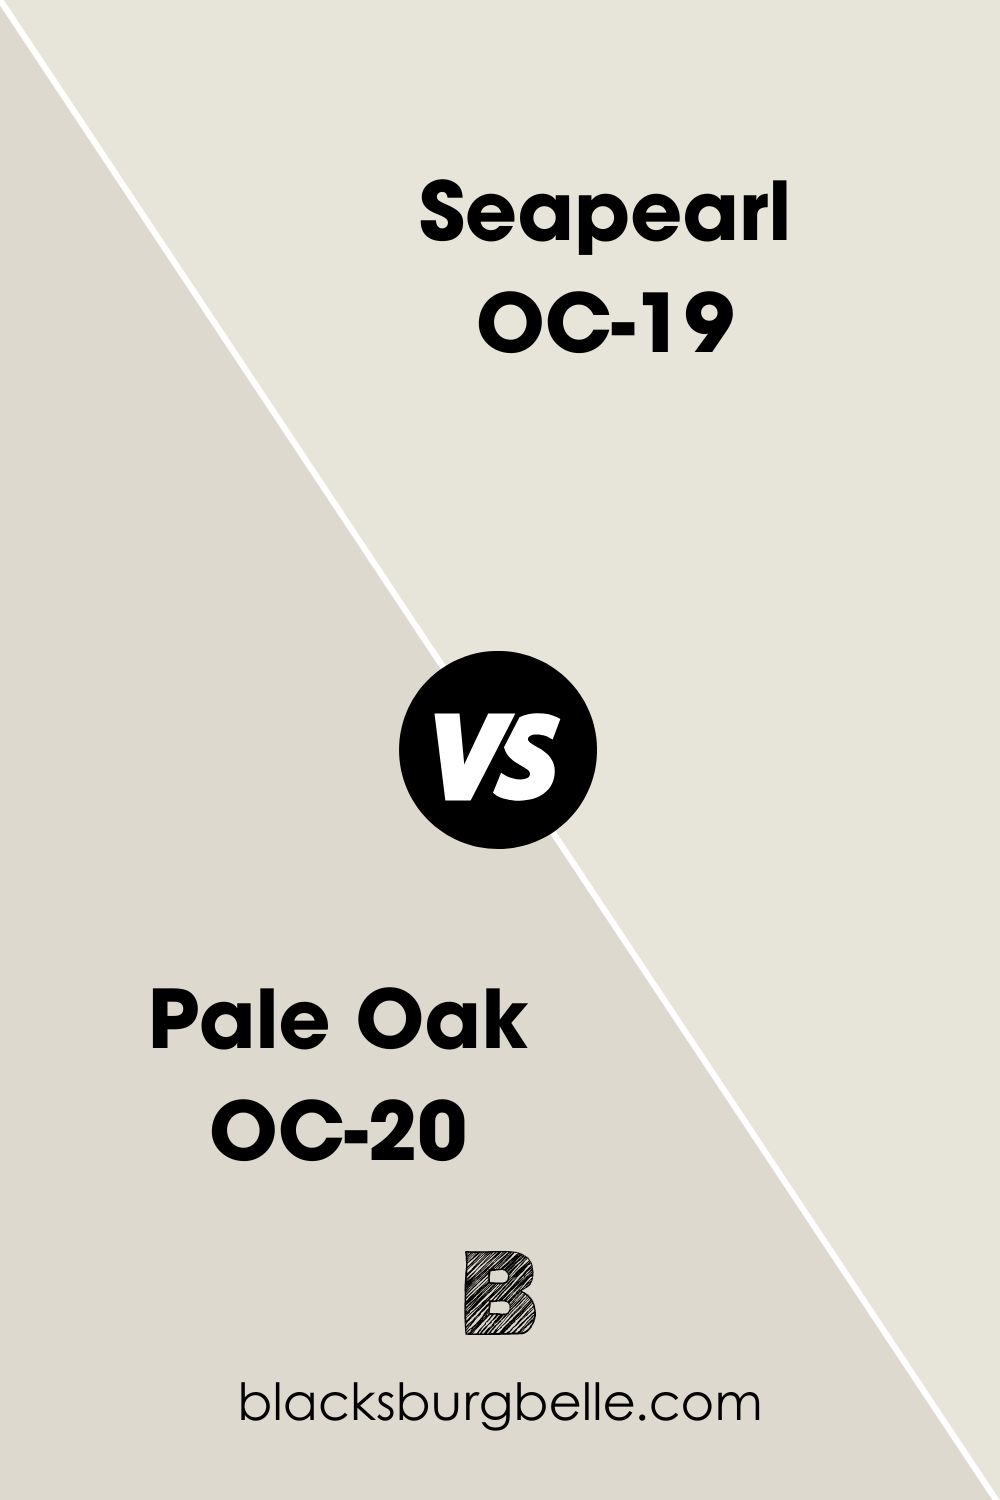 Pale Oak OC-20